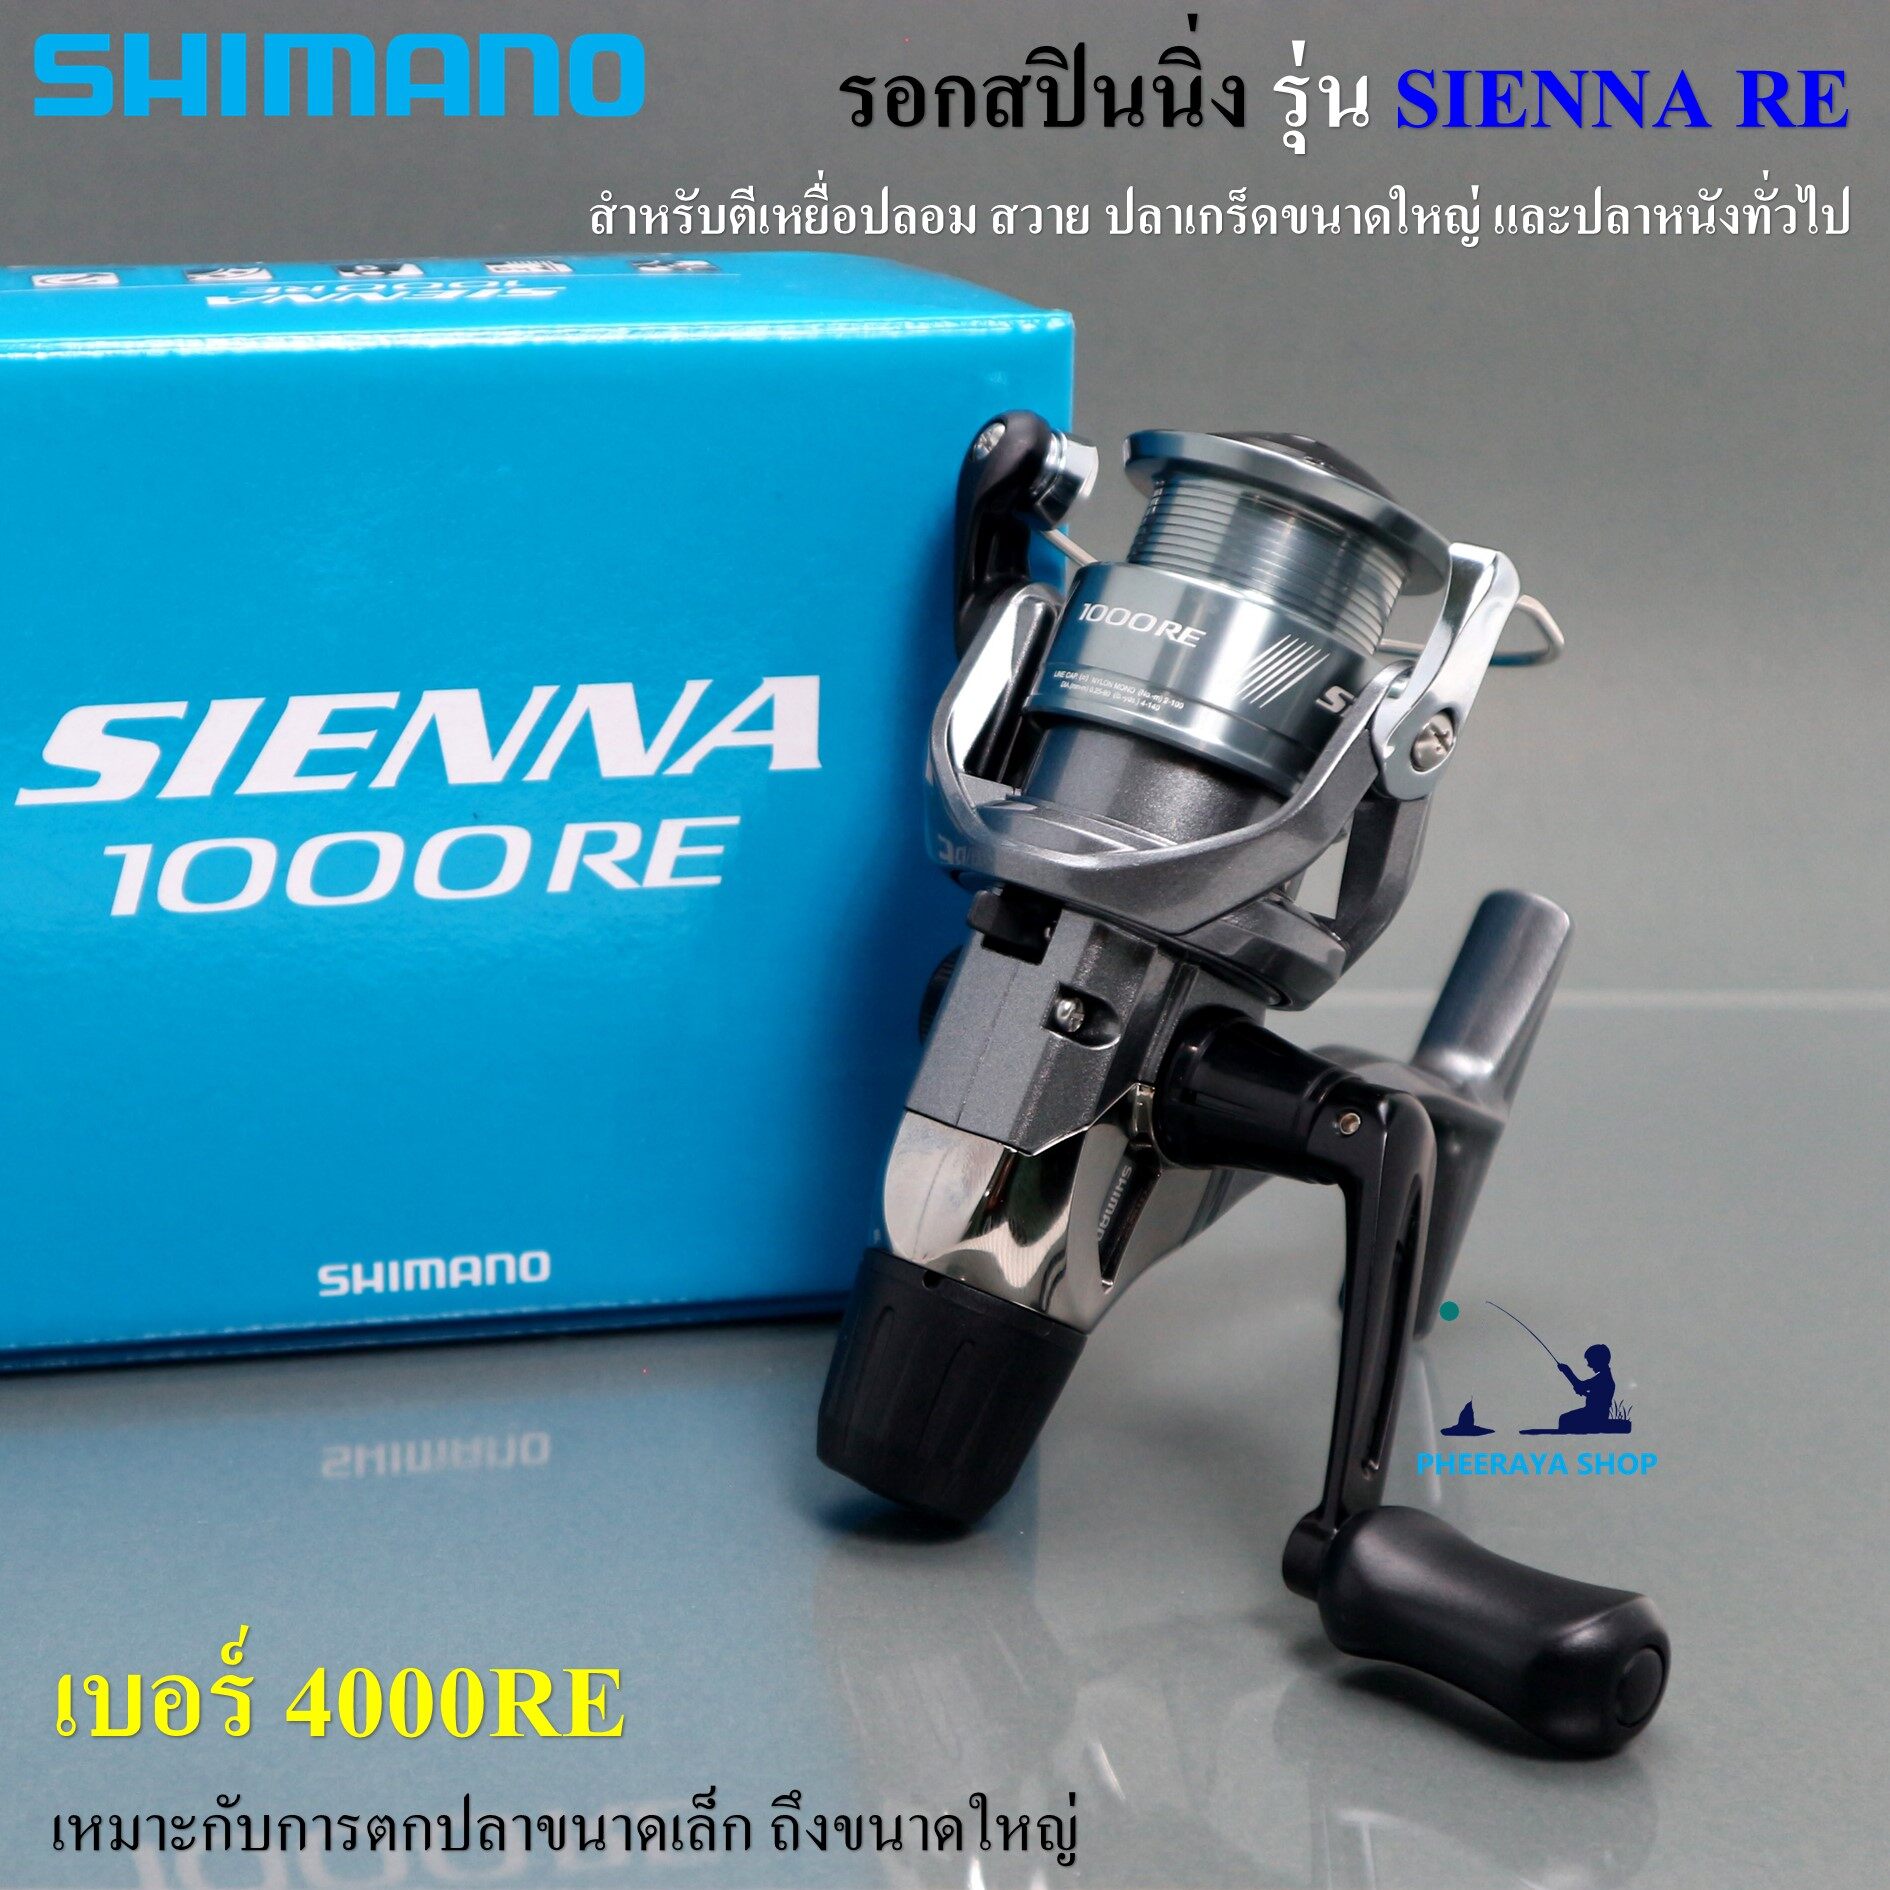 Shimano Sienna RE